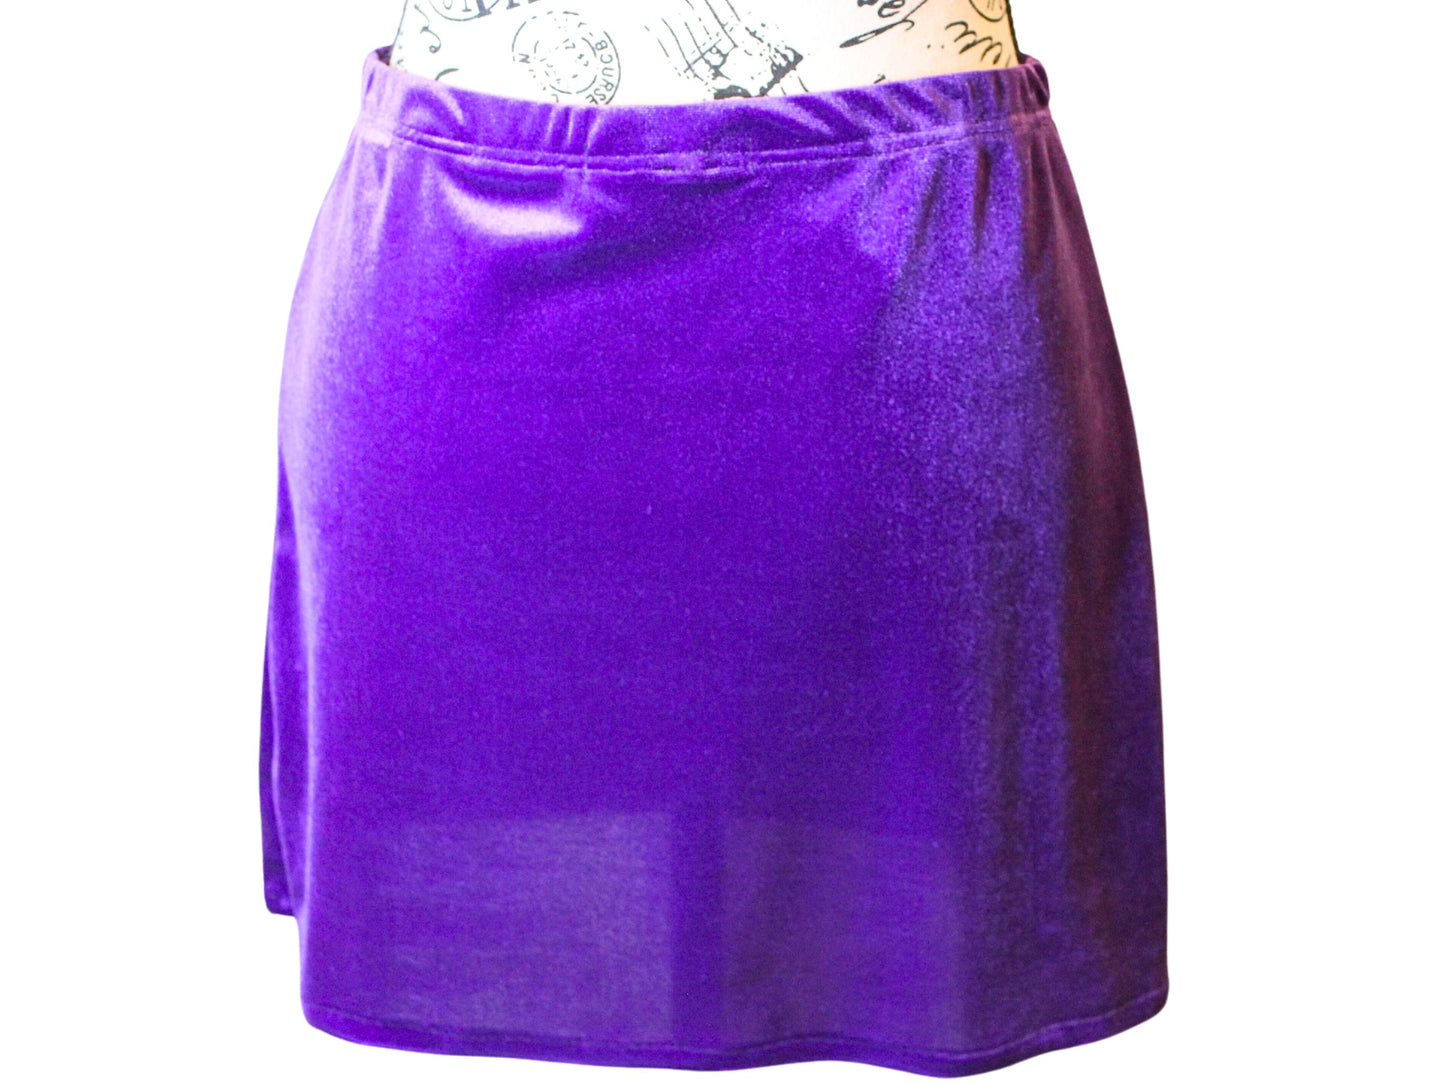 The VM Velvet Mini Skirt